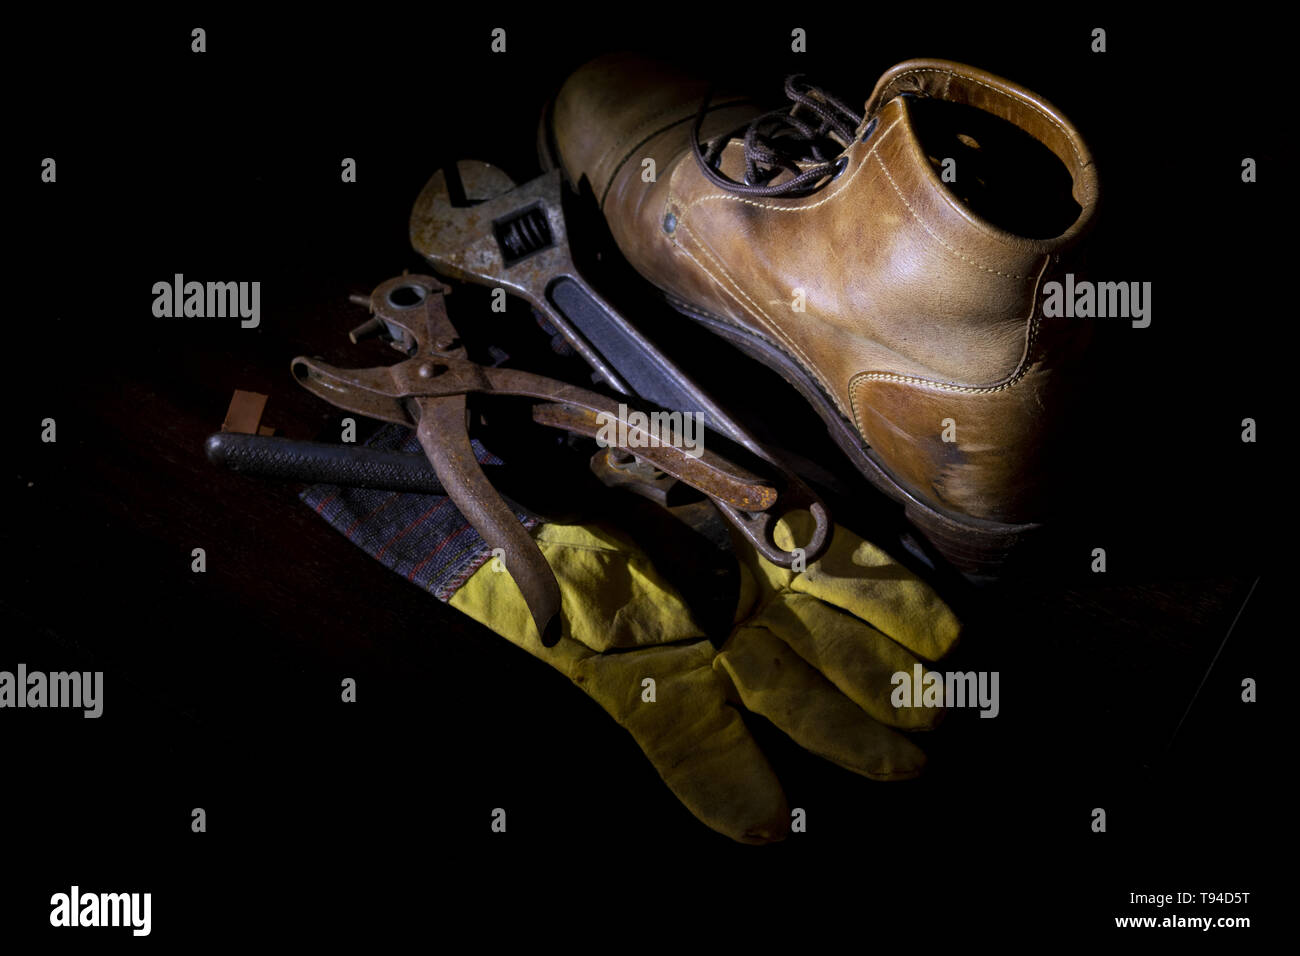 Outils de travail de métallurgistes photographié dans still life Banque D'Images